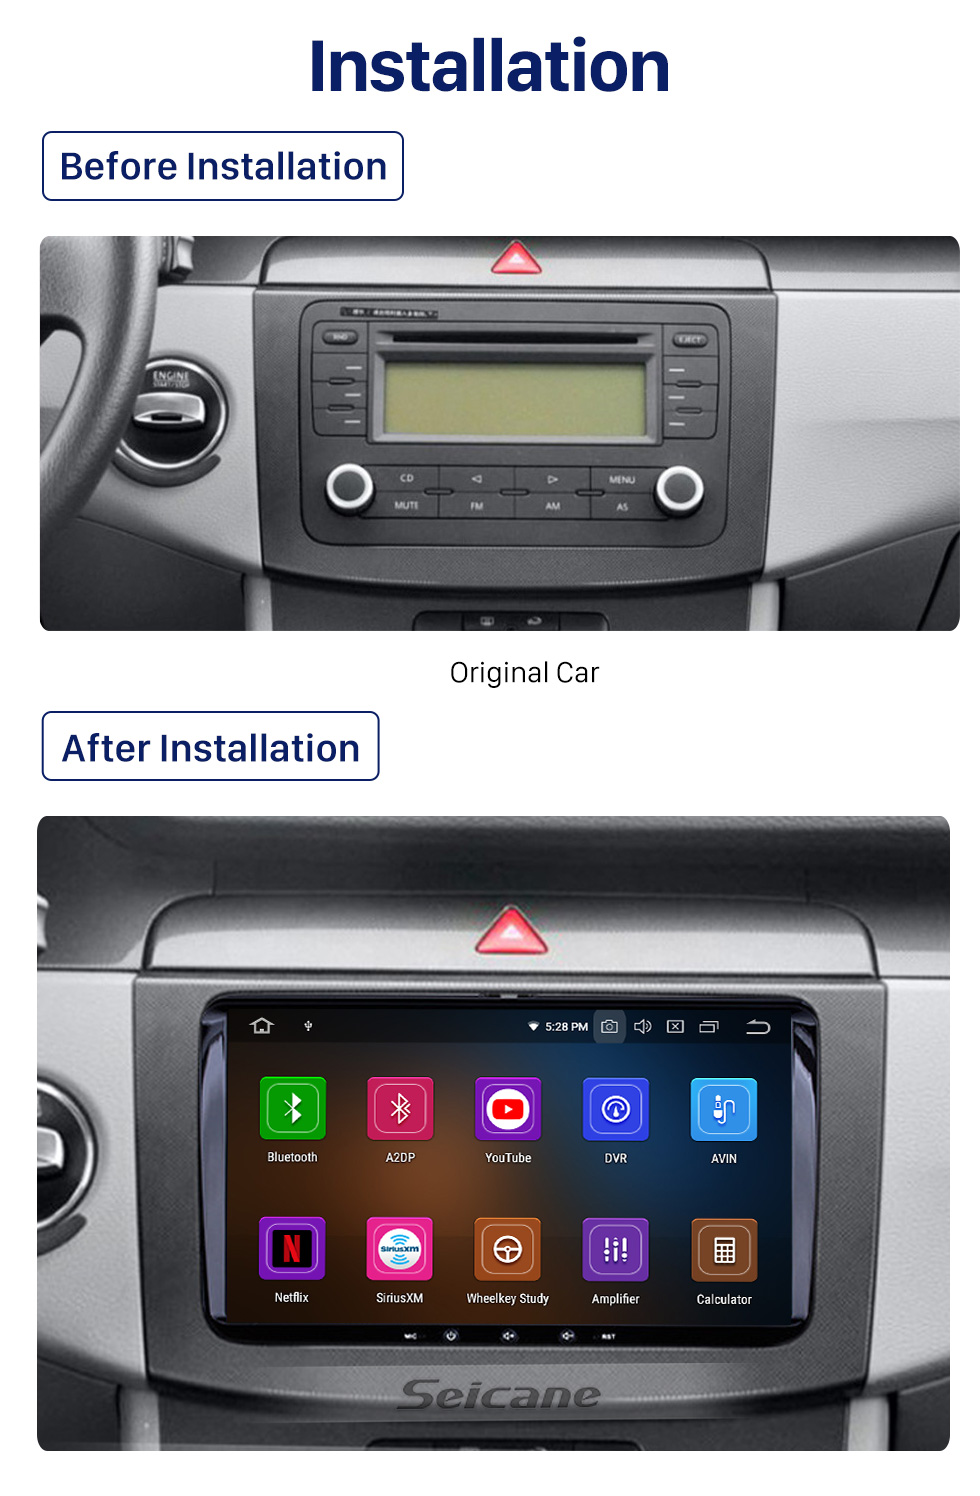 Seicane 9 polegada Android 8.1 HD 1024 * 600 Rádio Tela Sensível Ao Toque para VW Volkswagen Assento SKODA Universal com Navegação GPS WIFI Bluetooth Música Espelho Link Controle de Volante 1080 P Vídeo